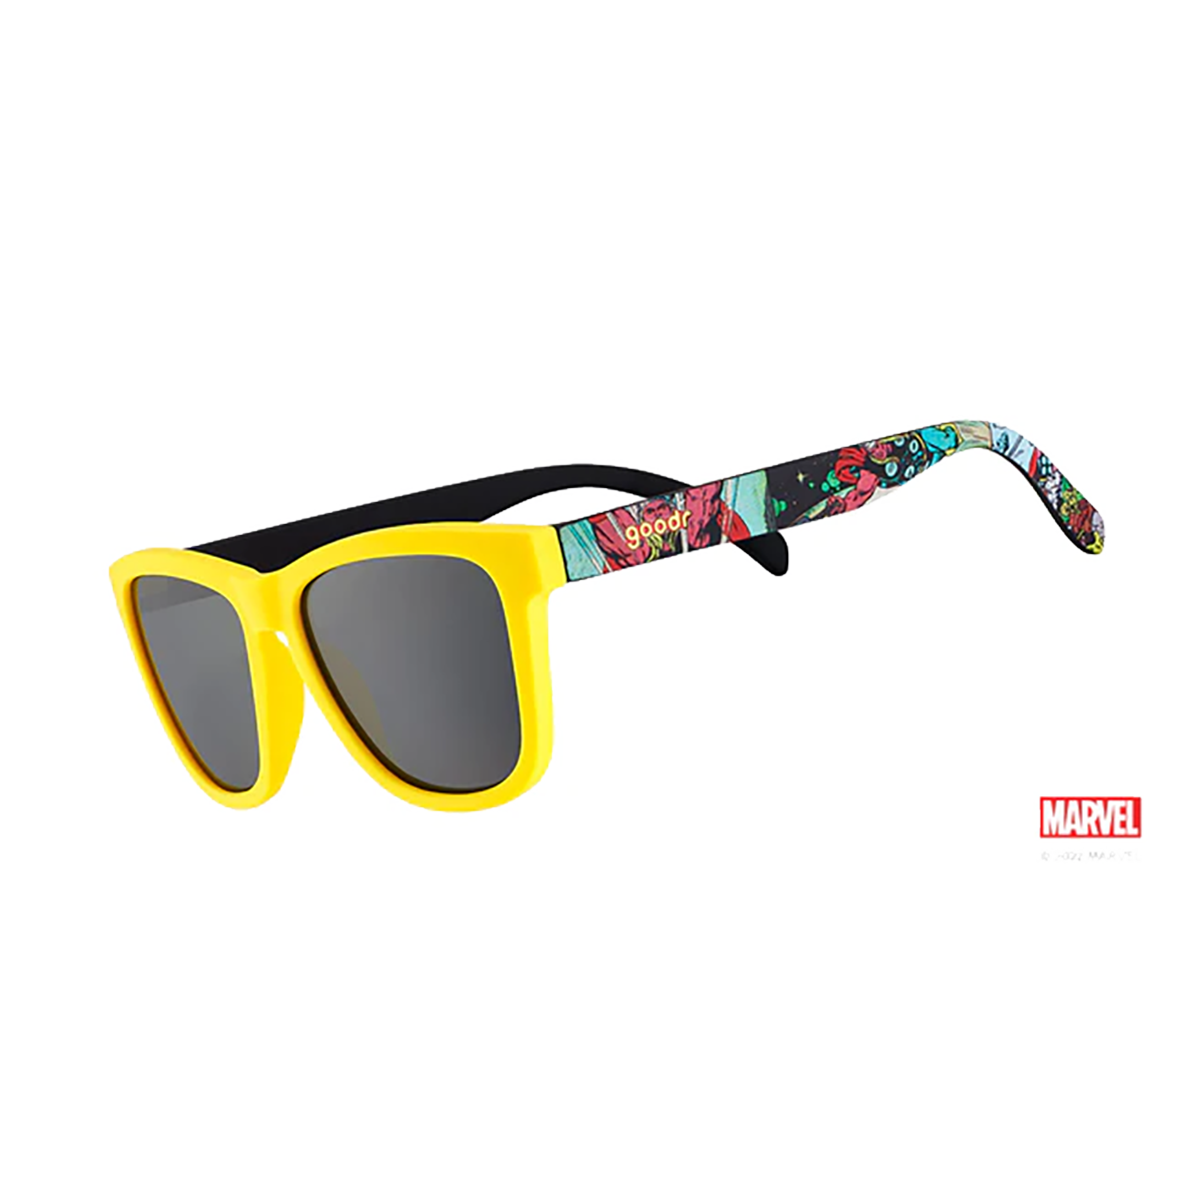 Goodr OG Marvel Limited Edition Sunglasses, , large image number null